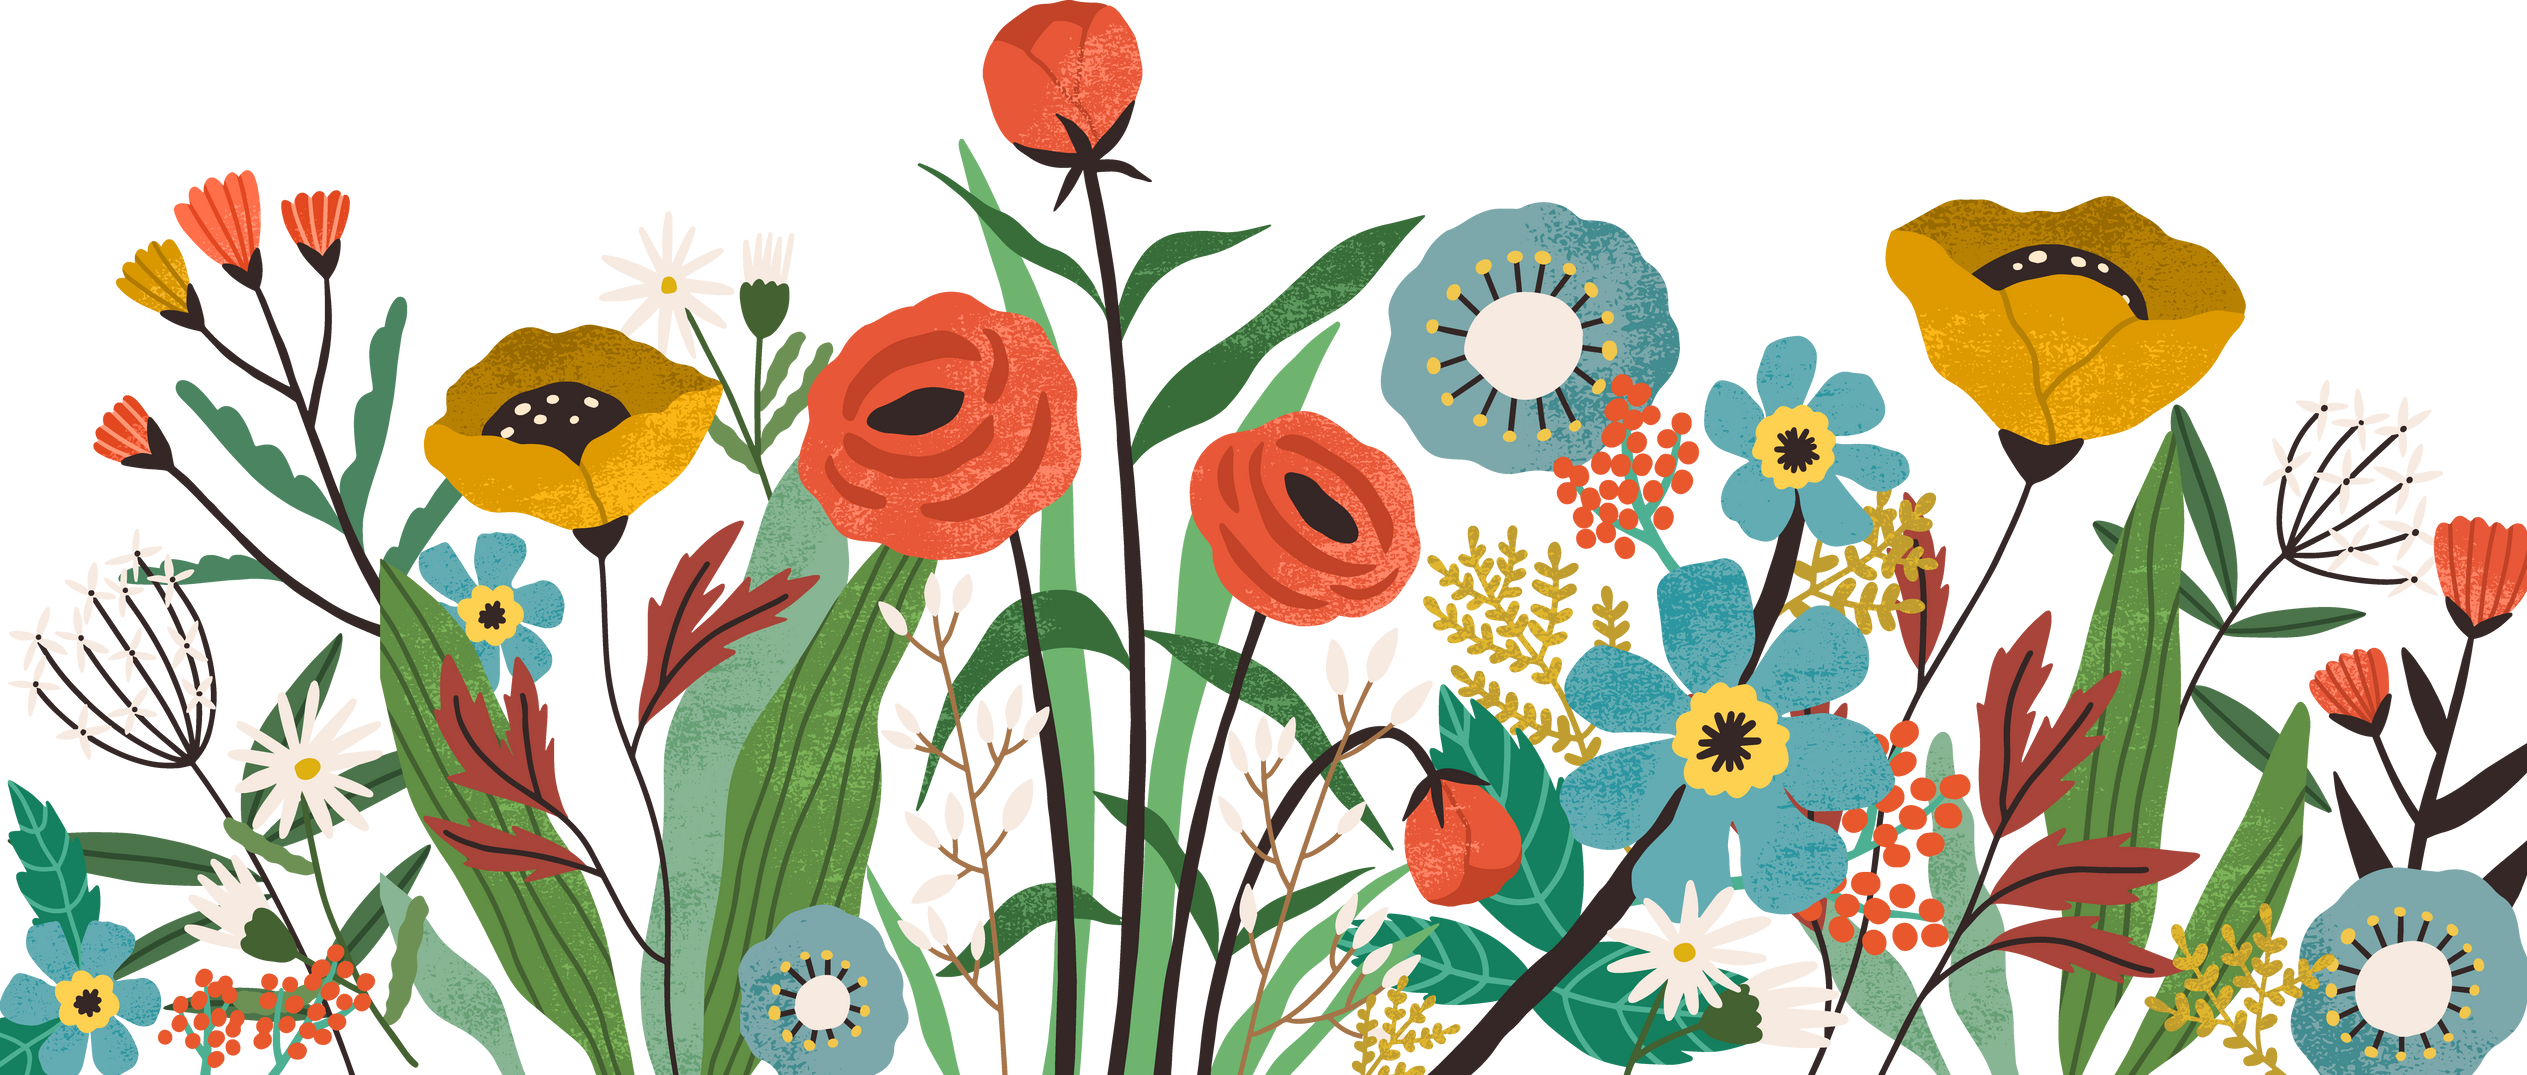 Flower Garden Illustration